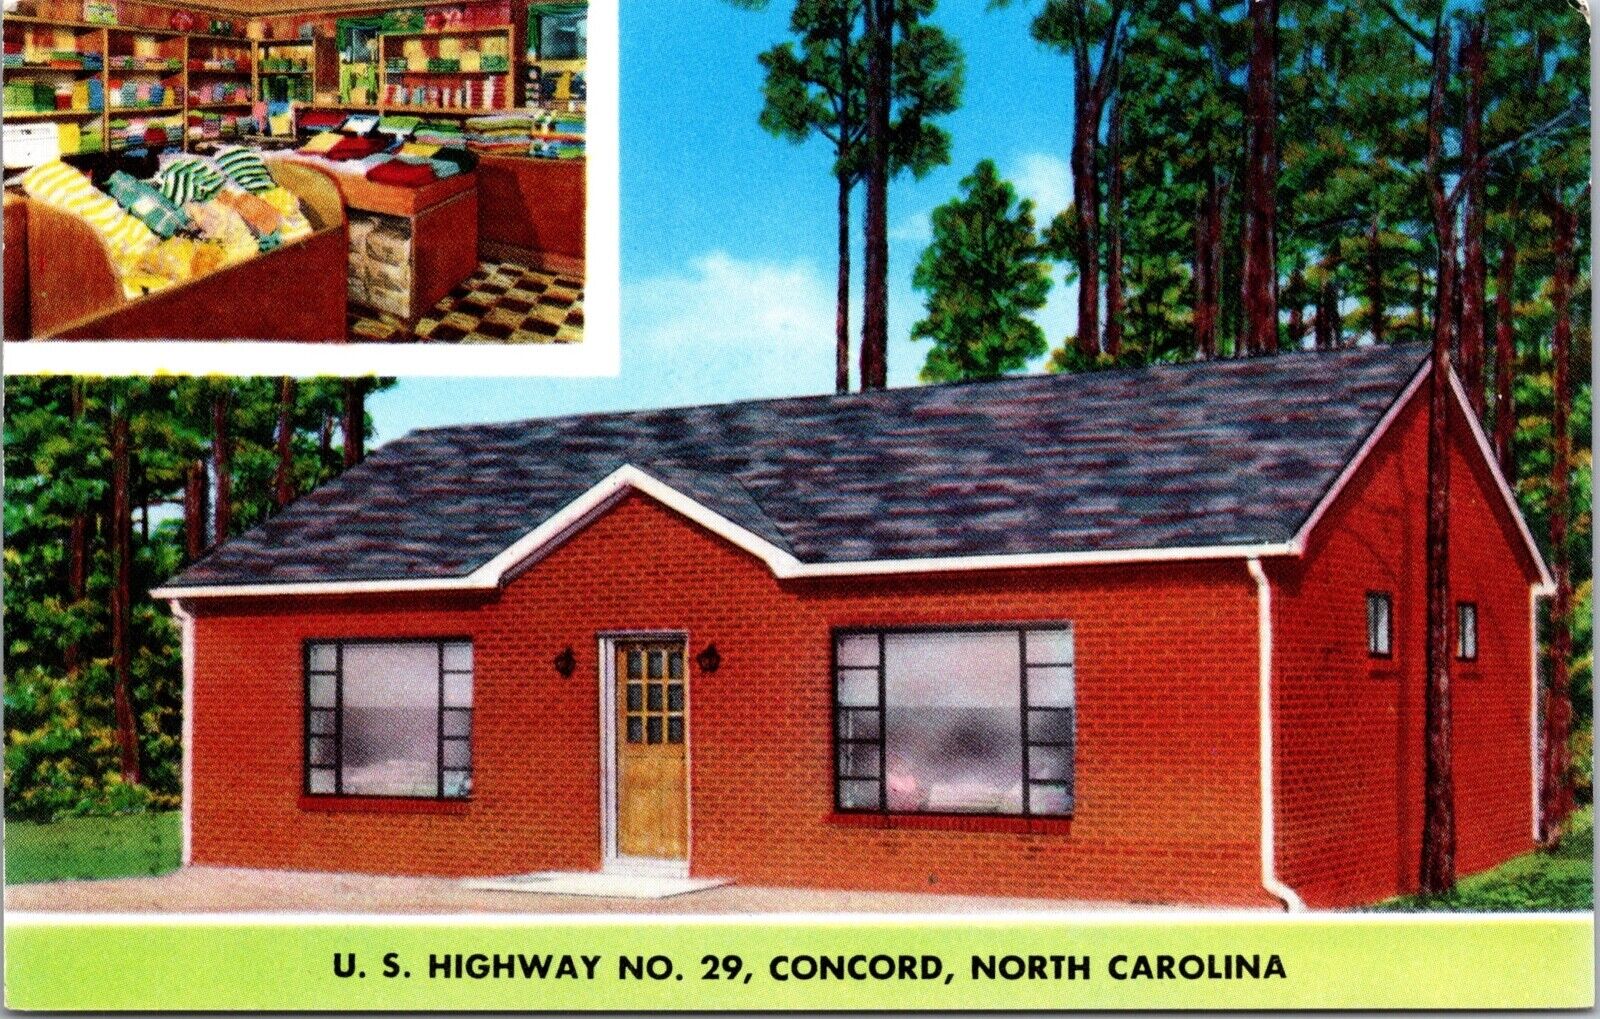 Postcard Towel Shop U.S. Highway No. 29 in Concord, North Carolina